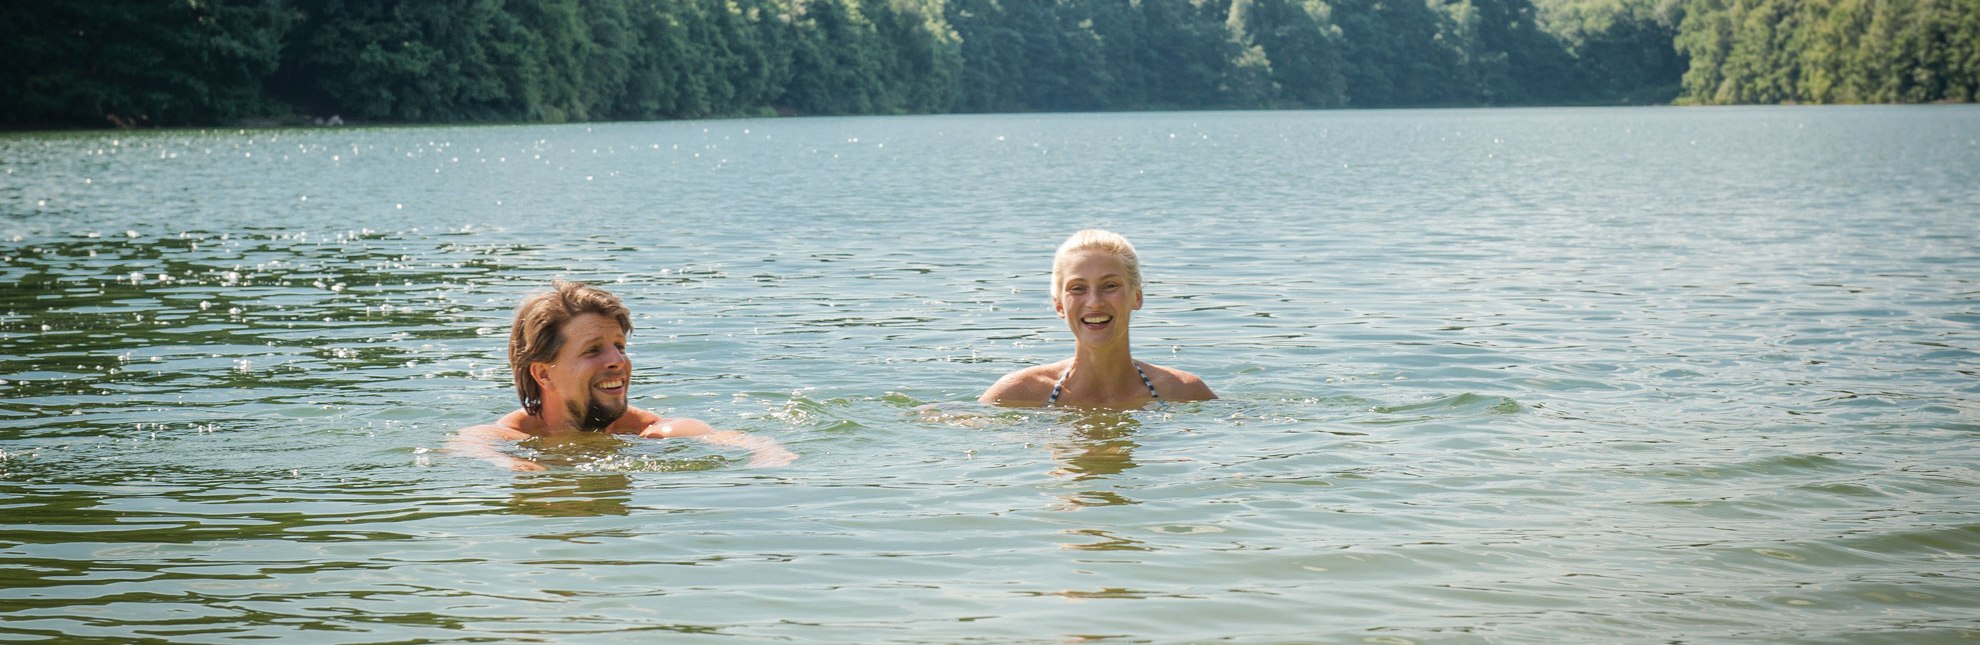 Genießen Sie eine kühle Erfrischung in einem der vielen Seen des Herzogtums Lauenburg., © Nicole Franke / HLMS GmbH